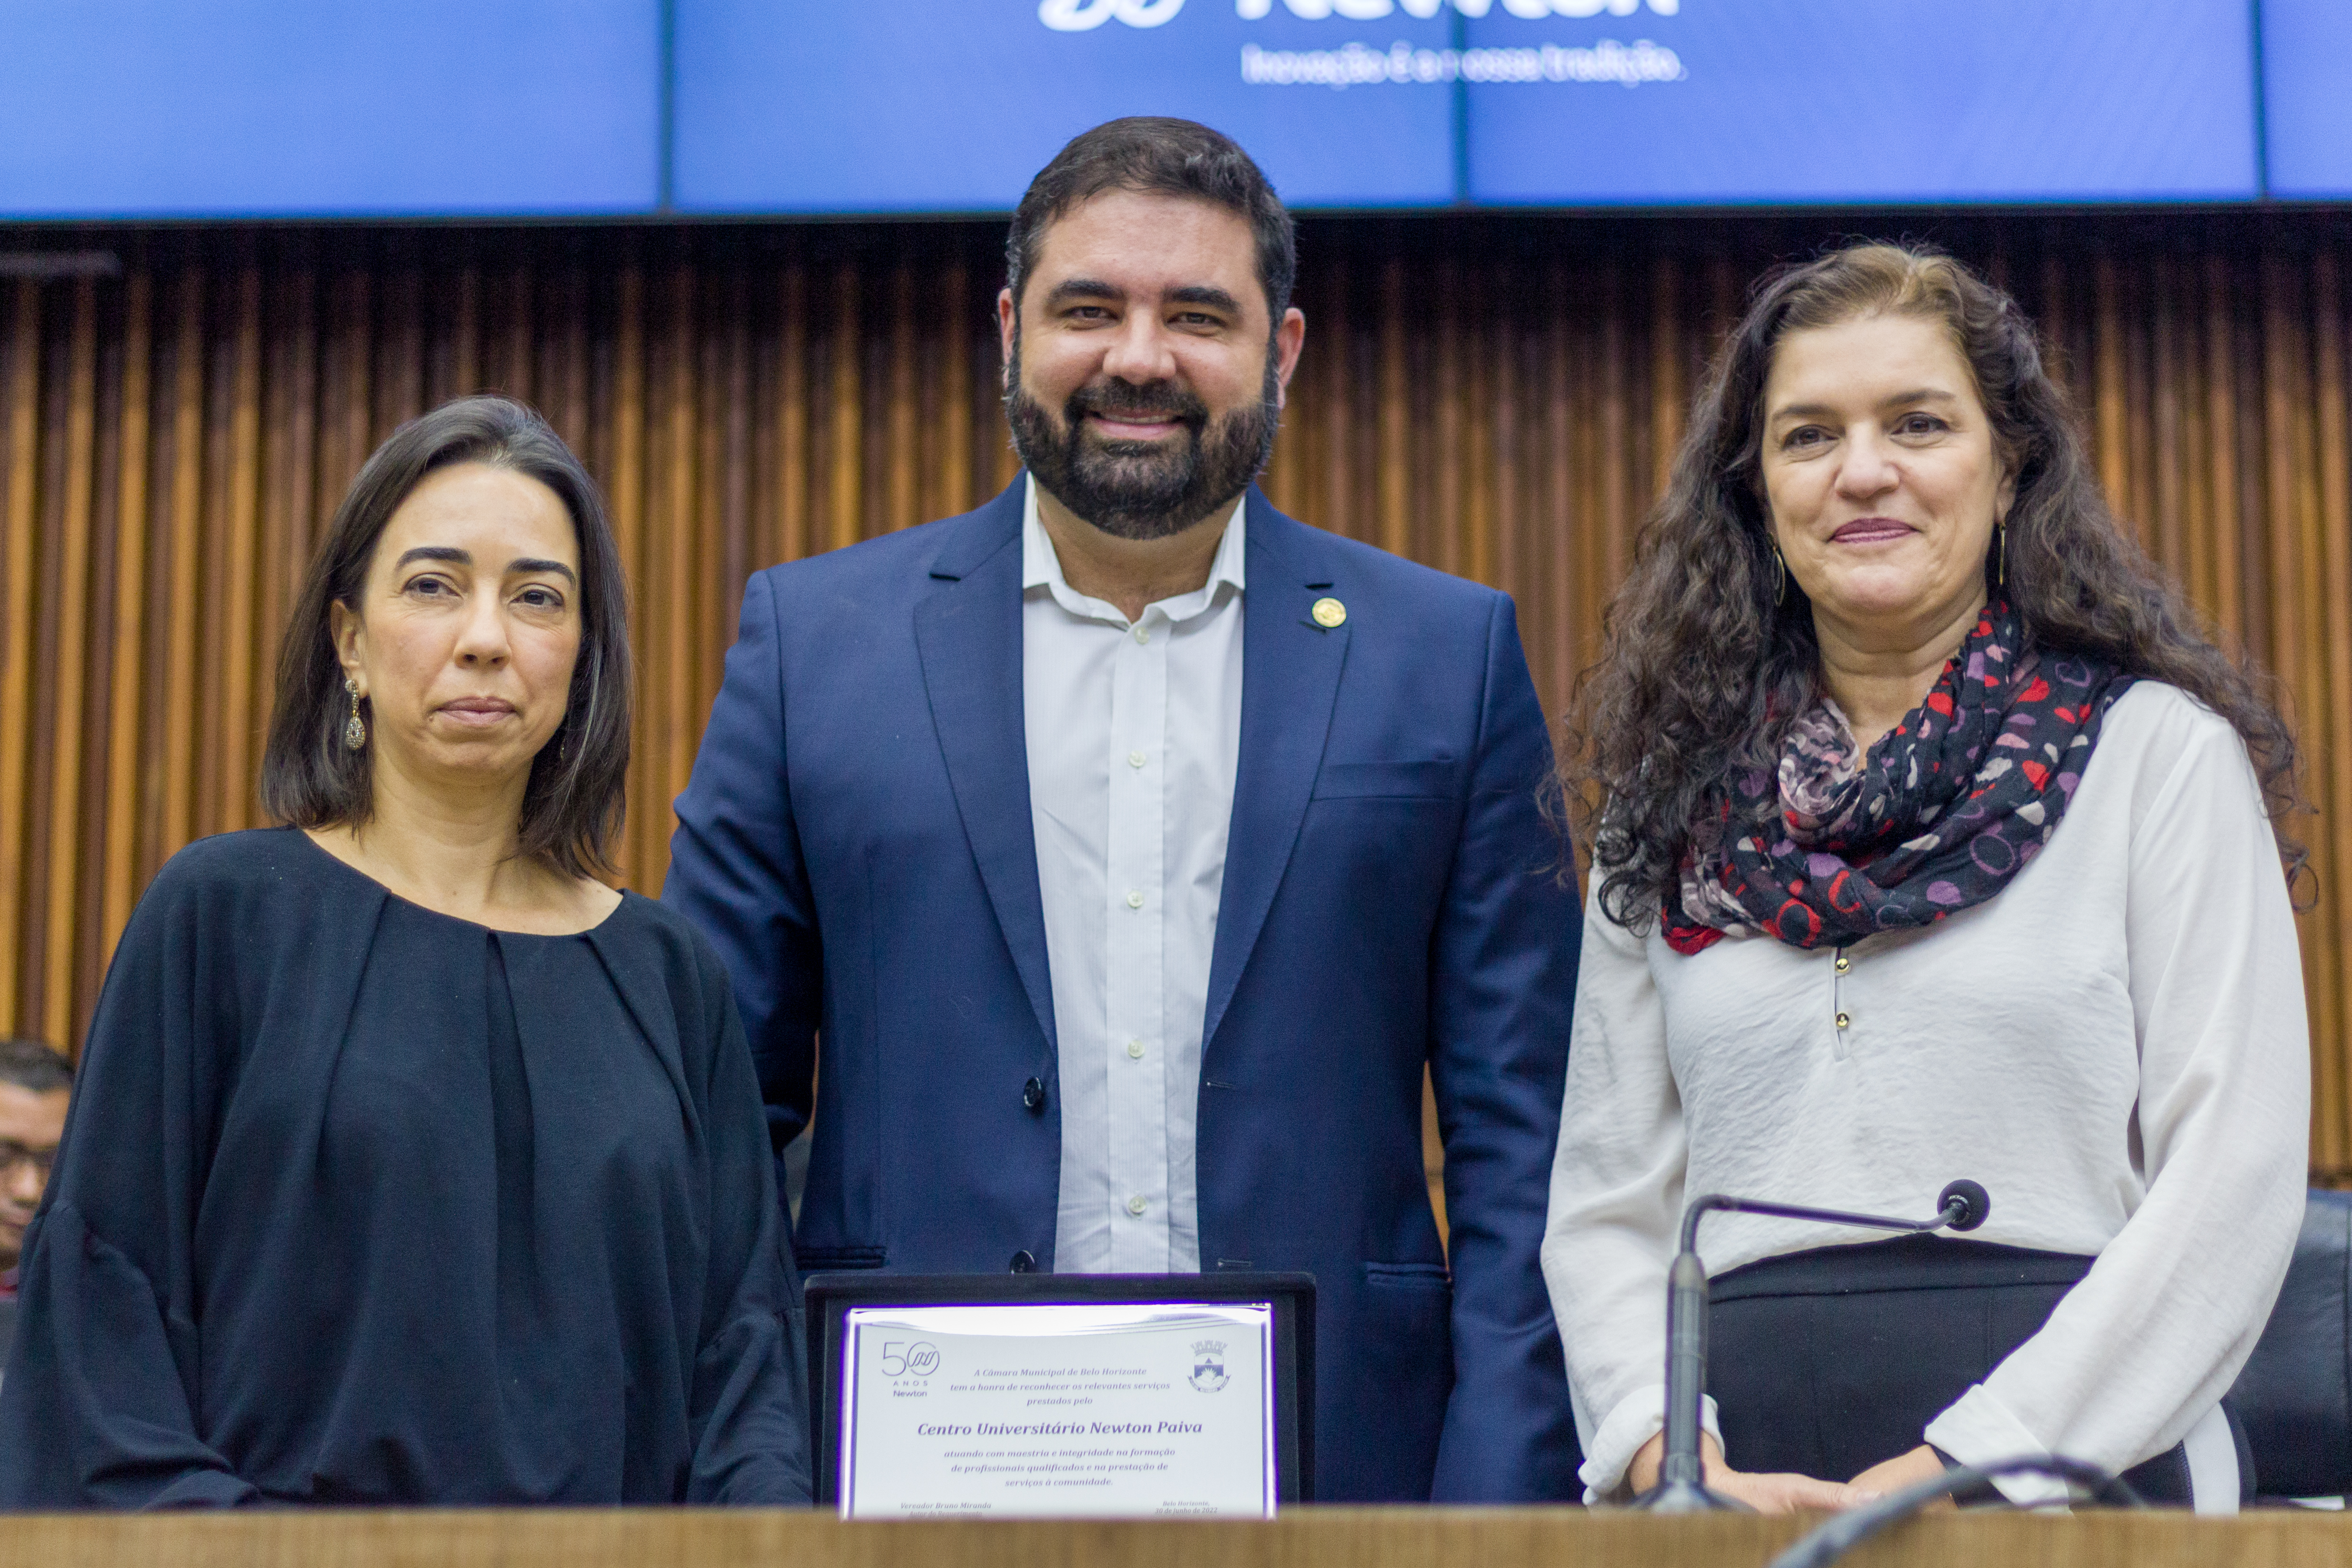  Newton Paiva recebe homenagem da Câmara Municipal de Belo Horizonte